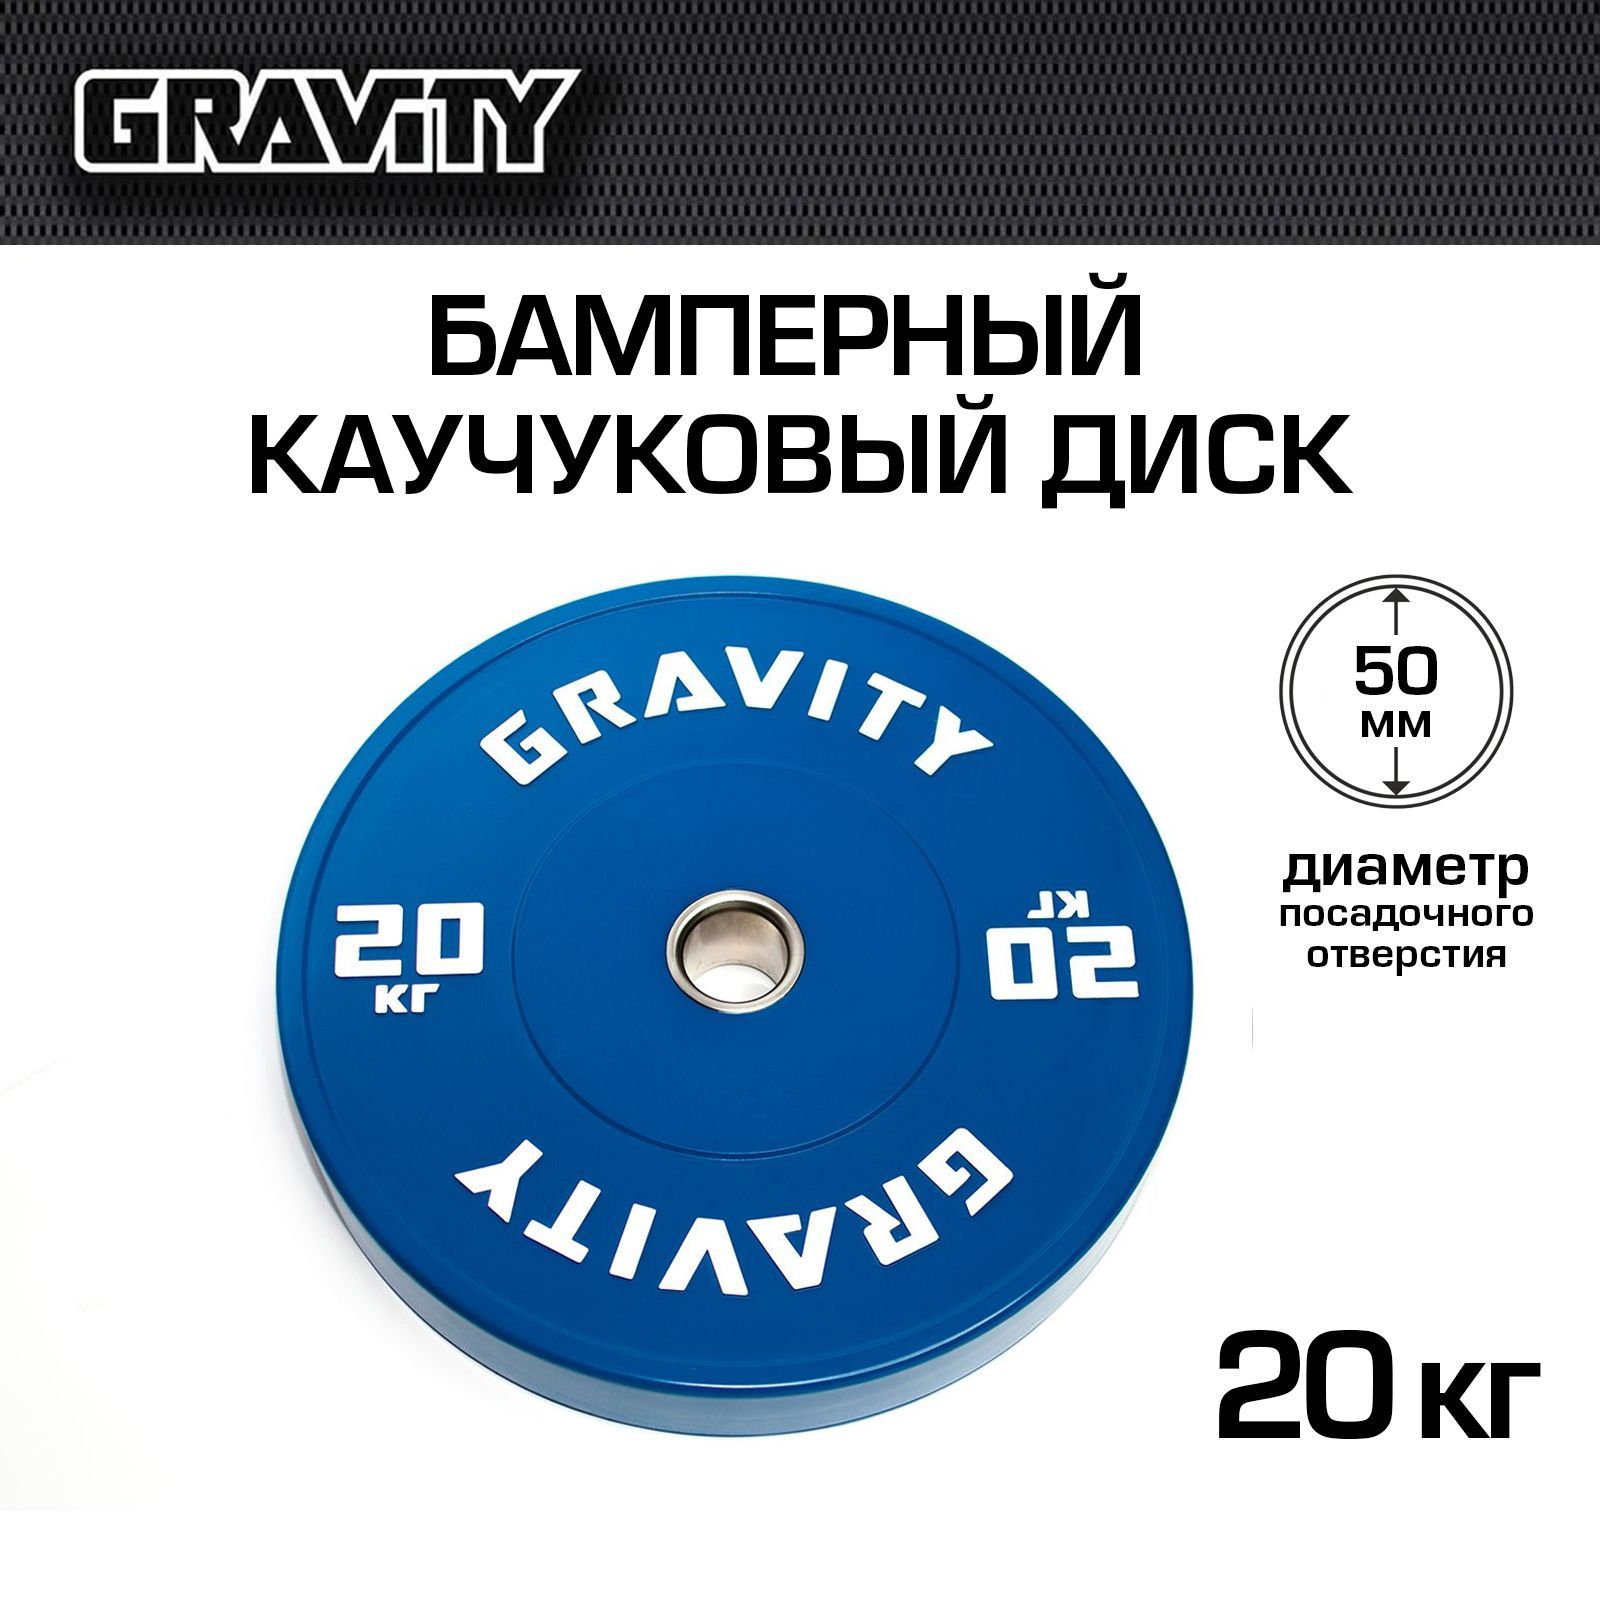 Бамперный каучуковый диск Gravity, синий, белый лого, 20 кг